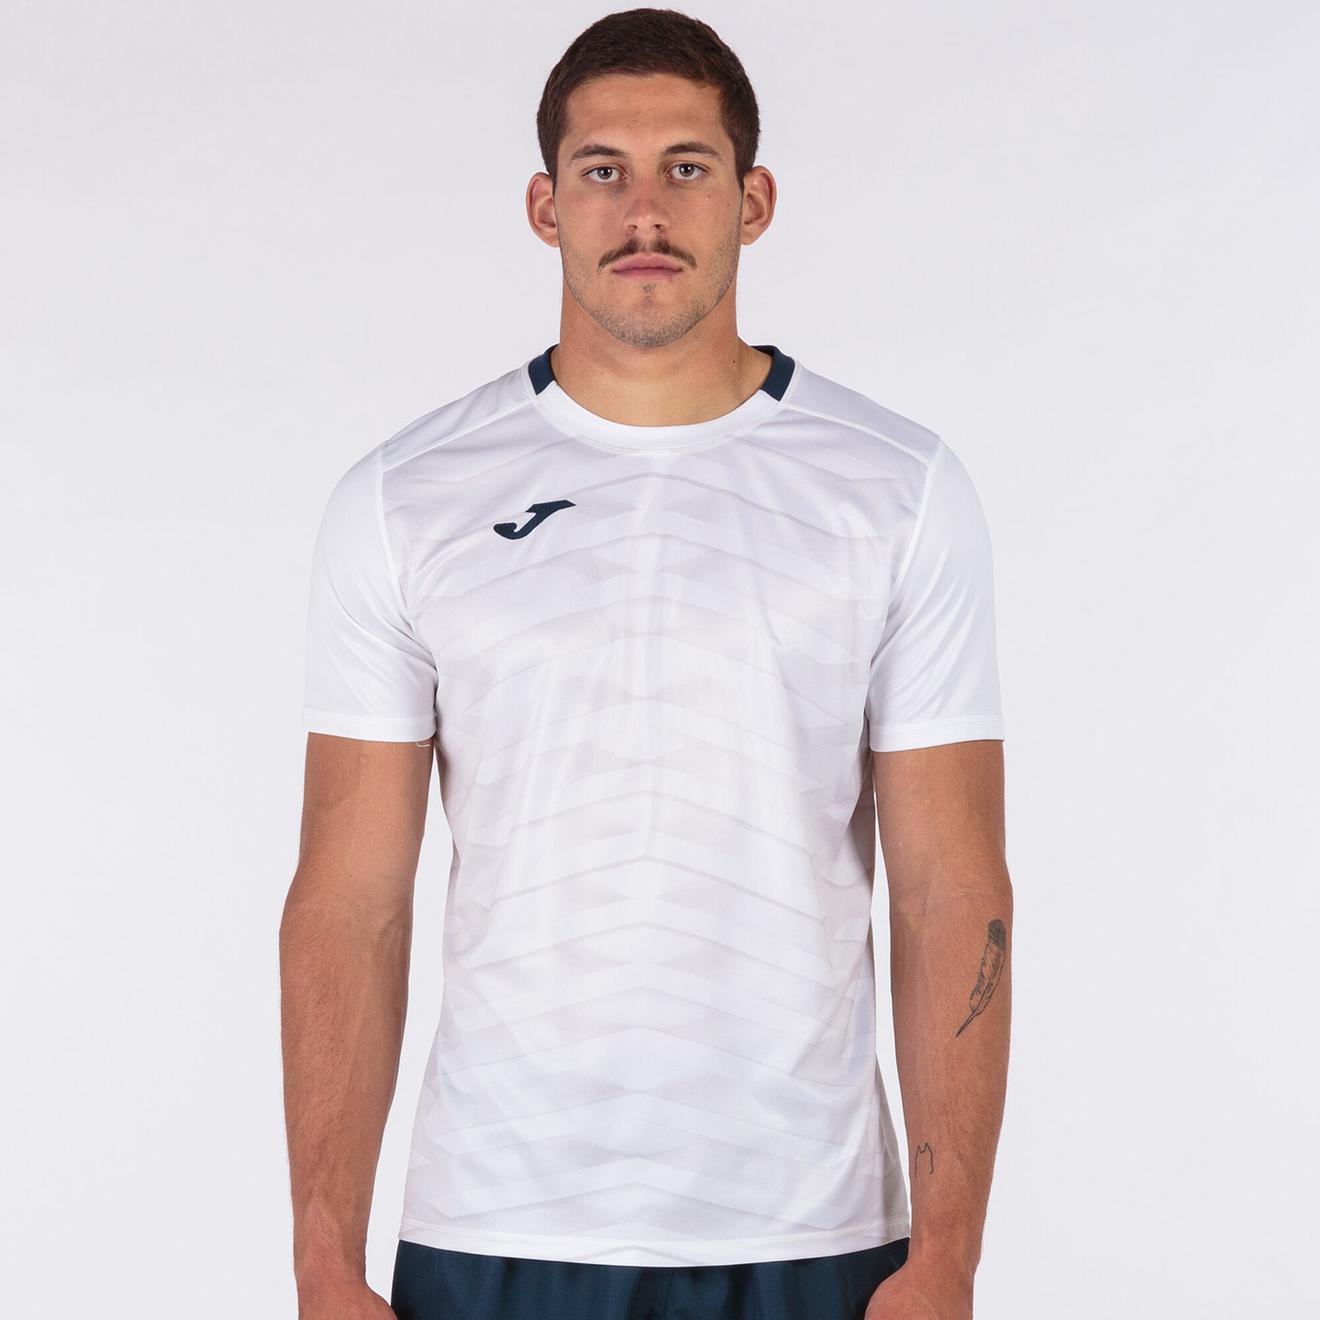 Oferta de Camiseta manga corta hombre Myskin Academy blanco por $10,33 en Joma